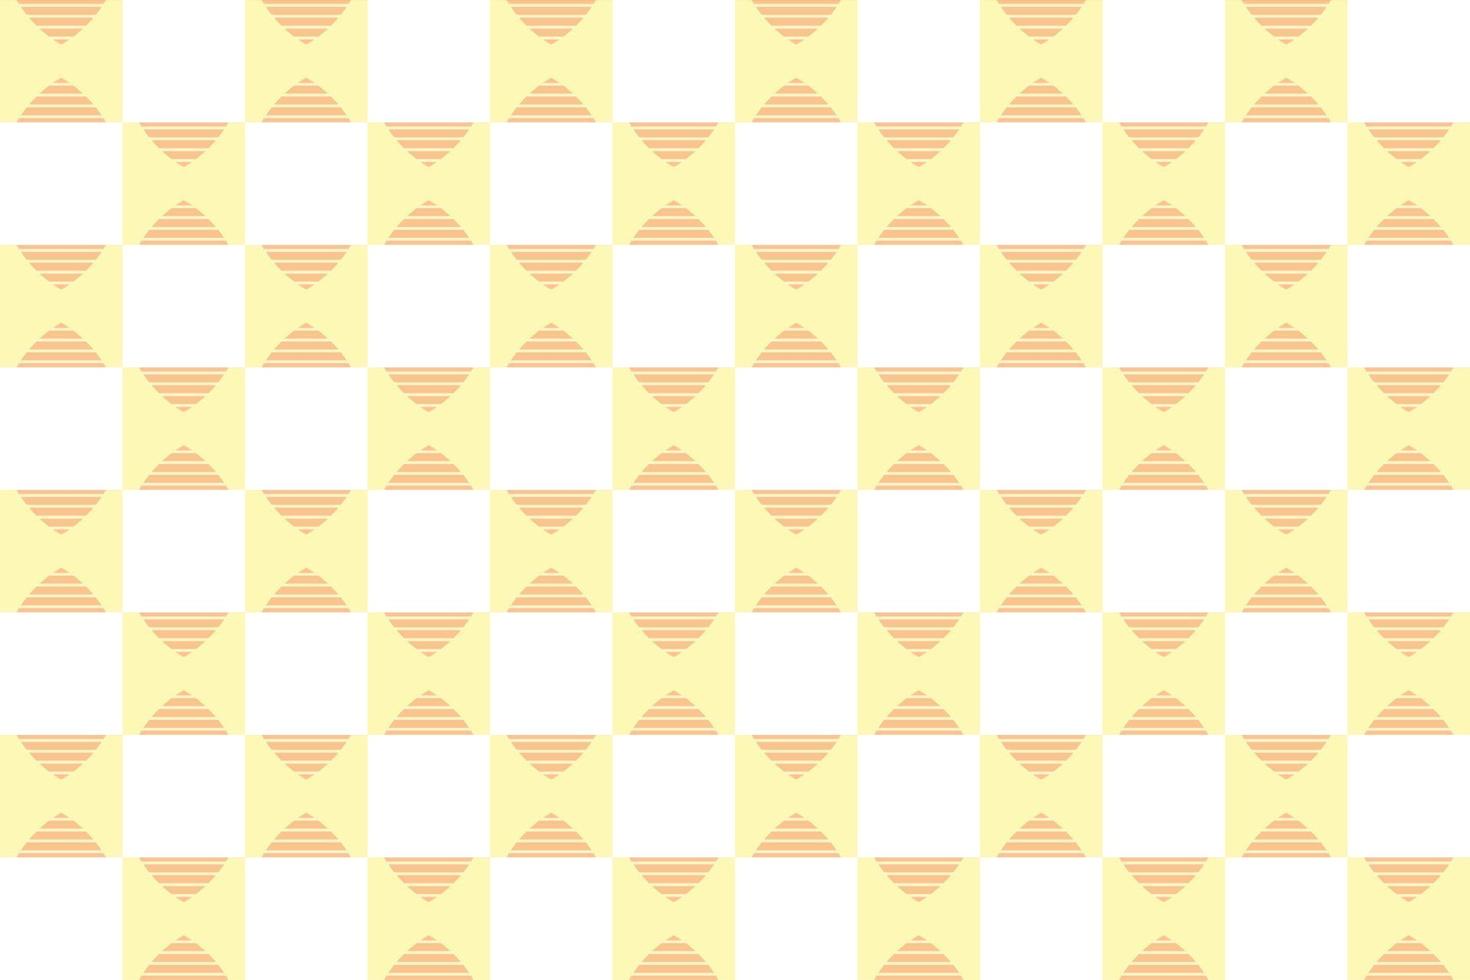 Quadrat Das Schachbrettmuster Das Muster enthält normalerweise mehrere Farben, wobei ein einzelnes Schachbrettmuster verwendet wird vektor